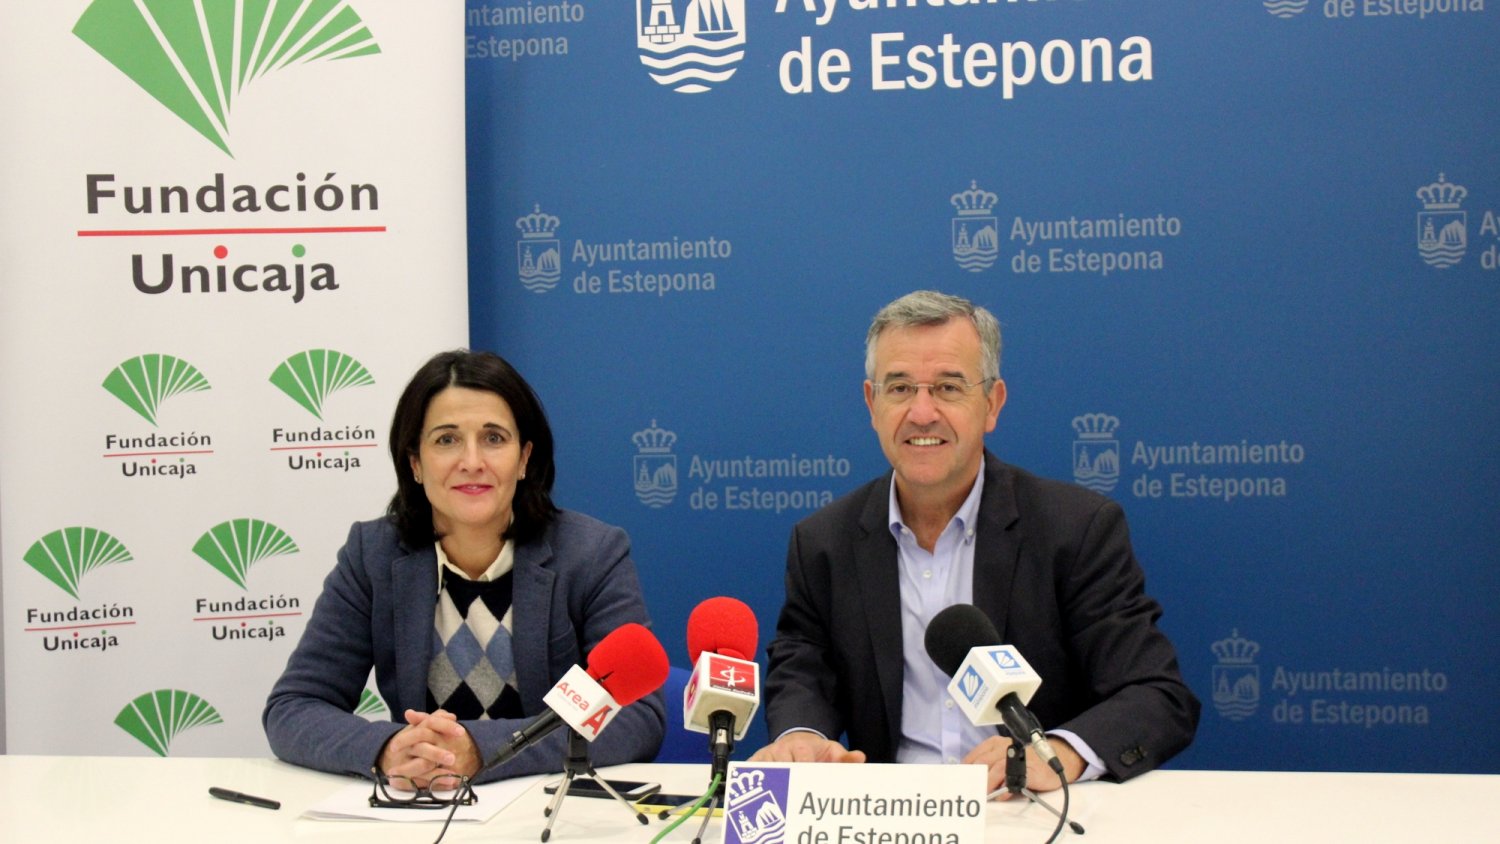 El Ayuntamiento de Estepona y la Fundación Unicaja presentan las bases del II Concurso Internacional de Murales